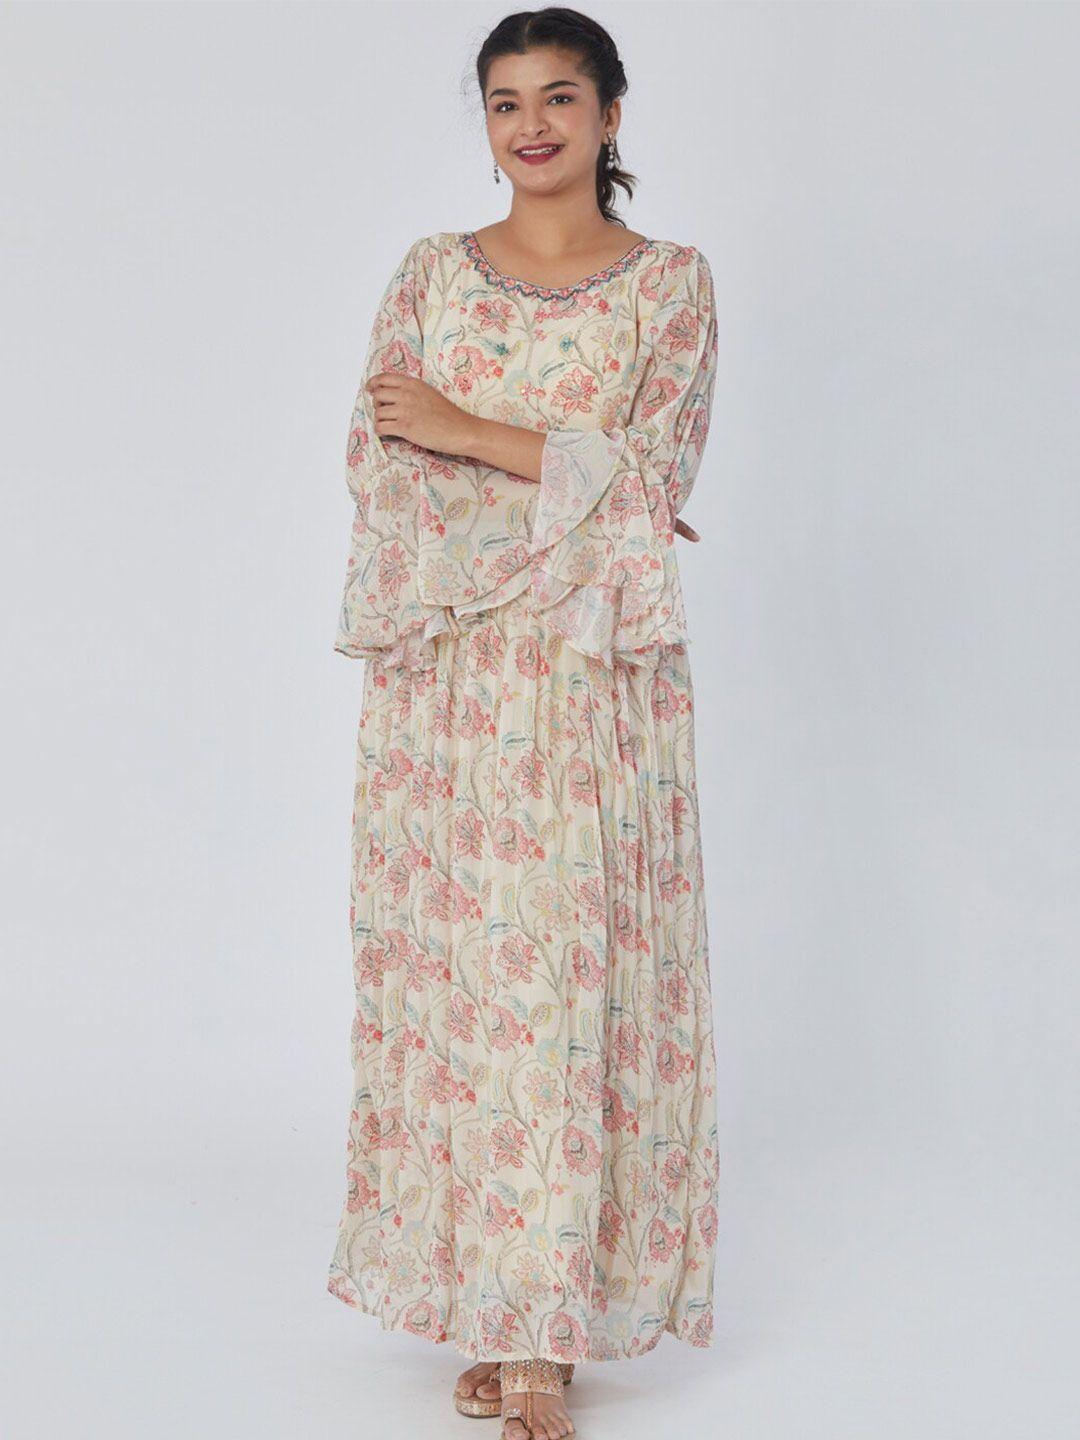 taruni floral printed bell sleeves georgette ethnic dress